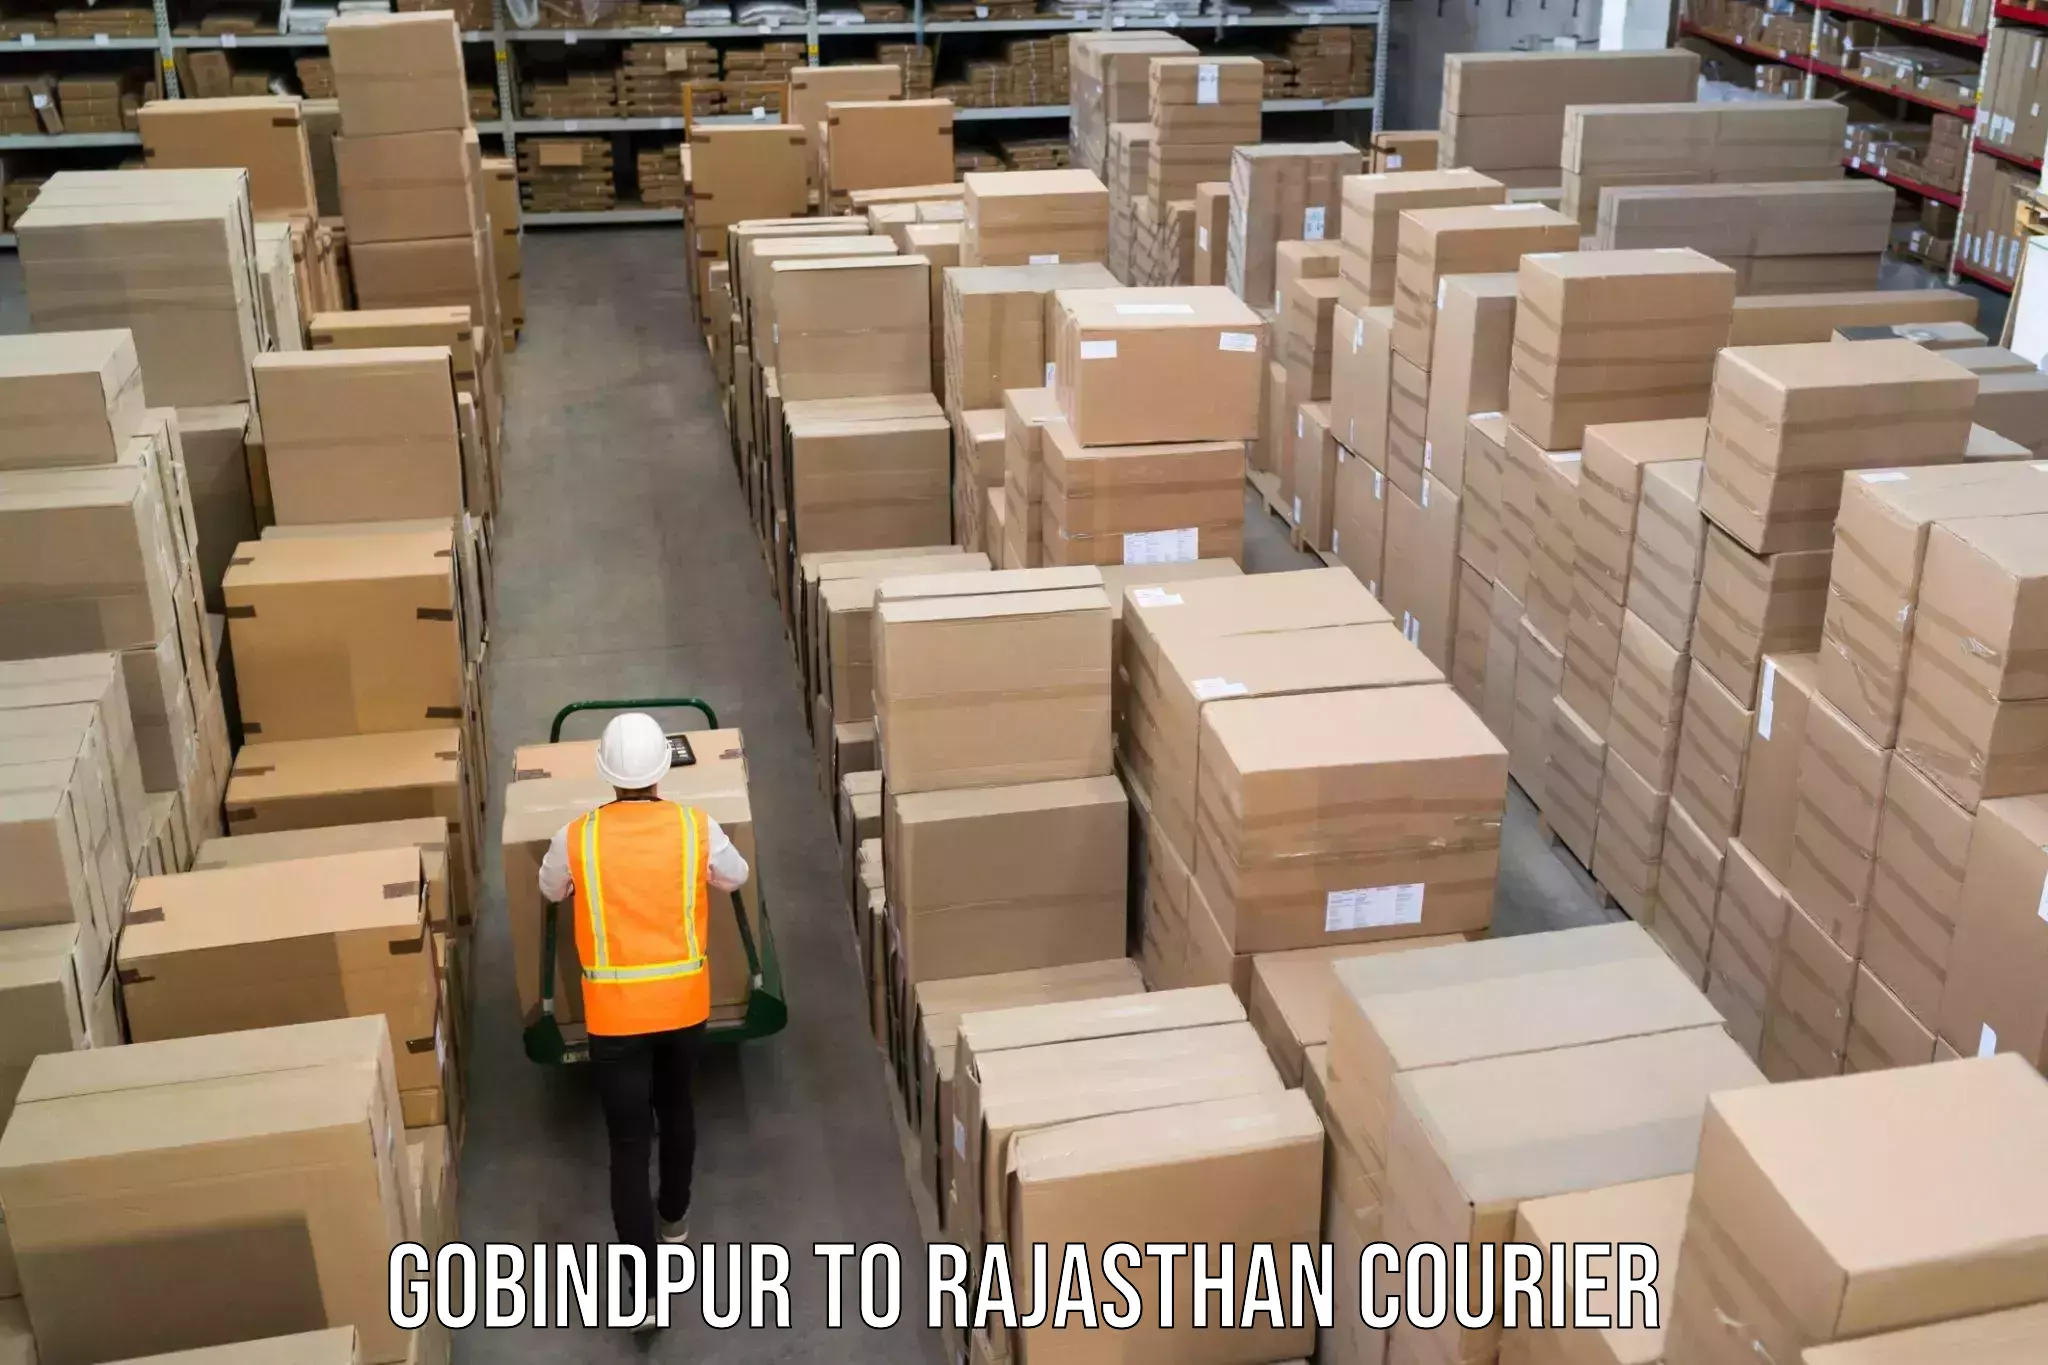 Baggage transport network Gobindpur to Rajasthan